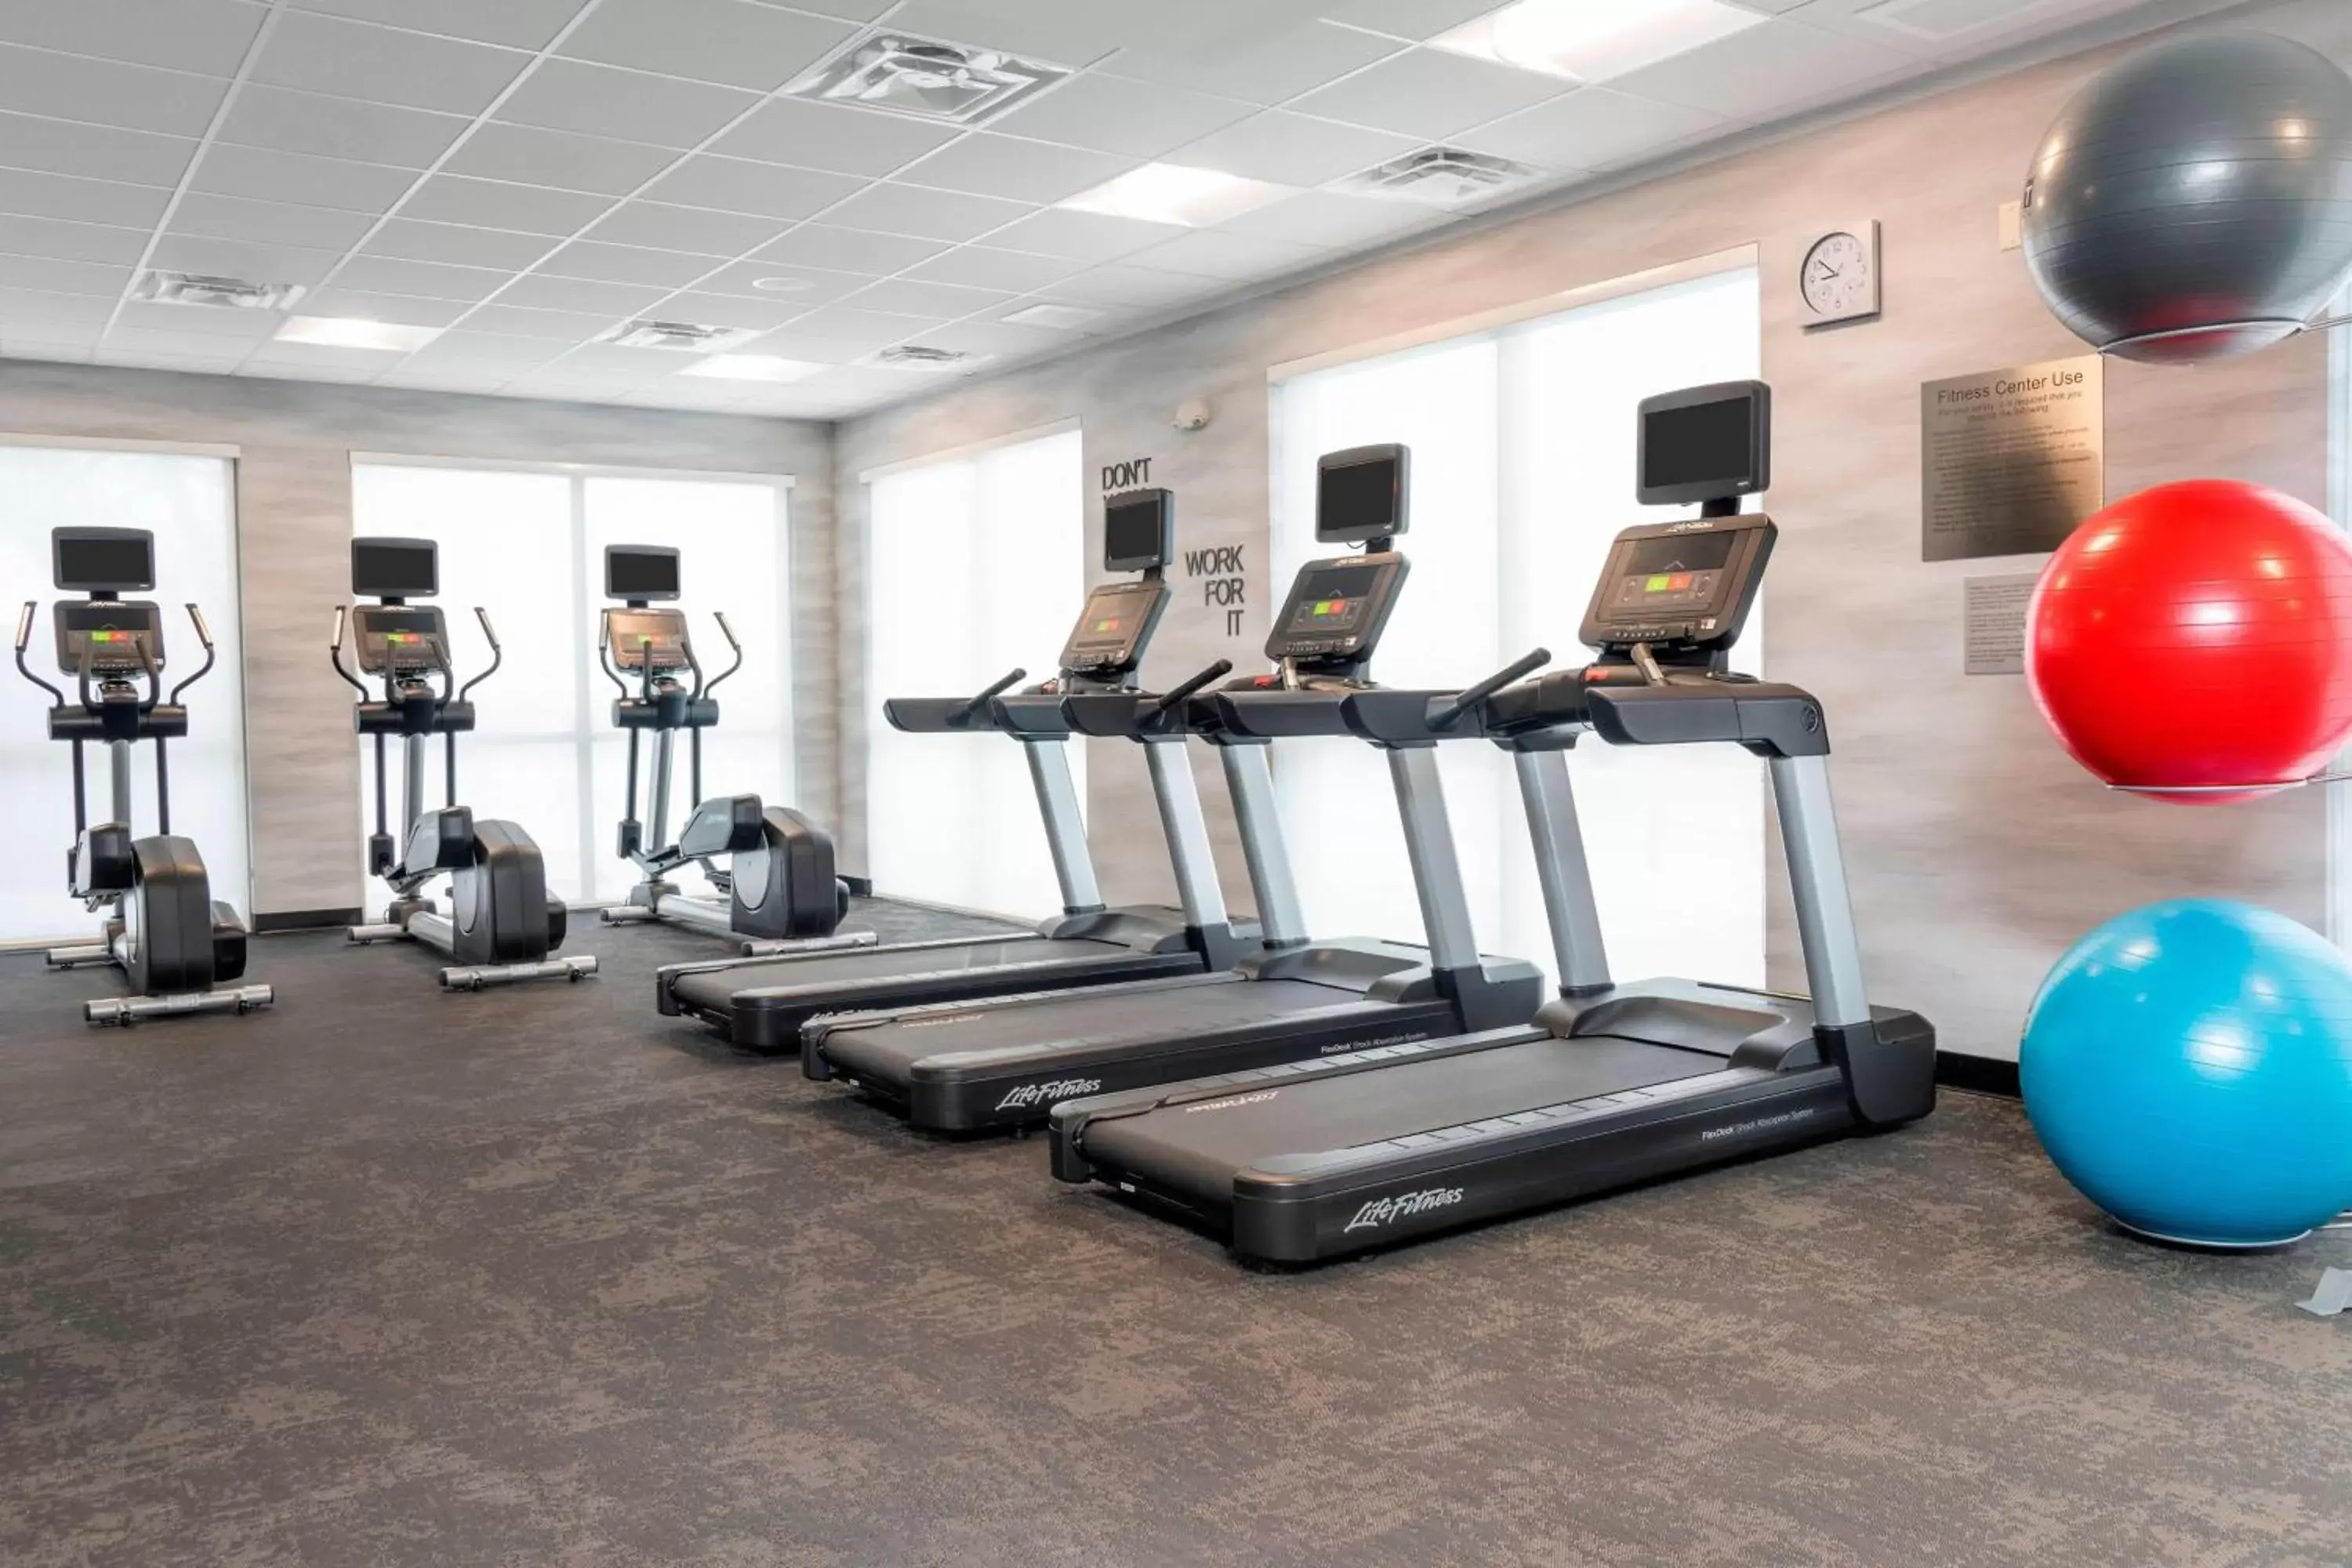 Fitness centre/facilities, Fitness Center/Facilities in Fairfield Inn & Suites by Marriott Fair Oaks Farms